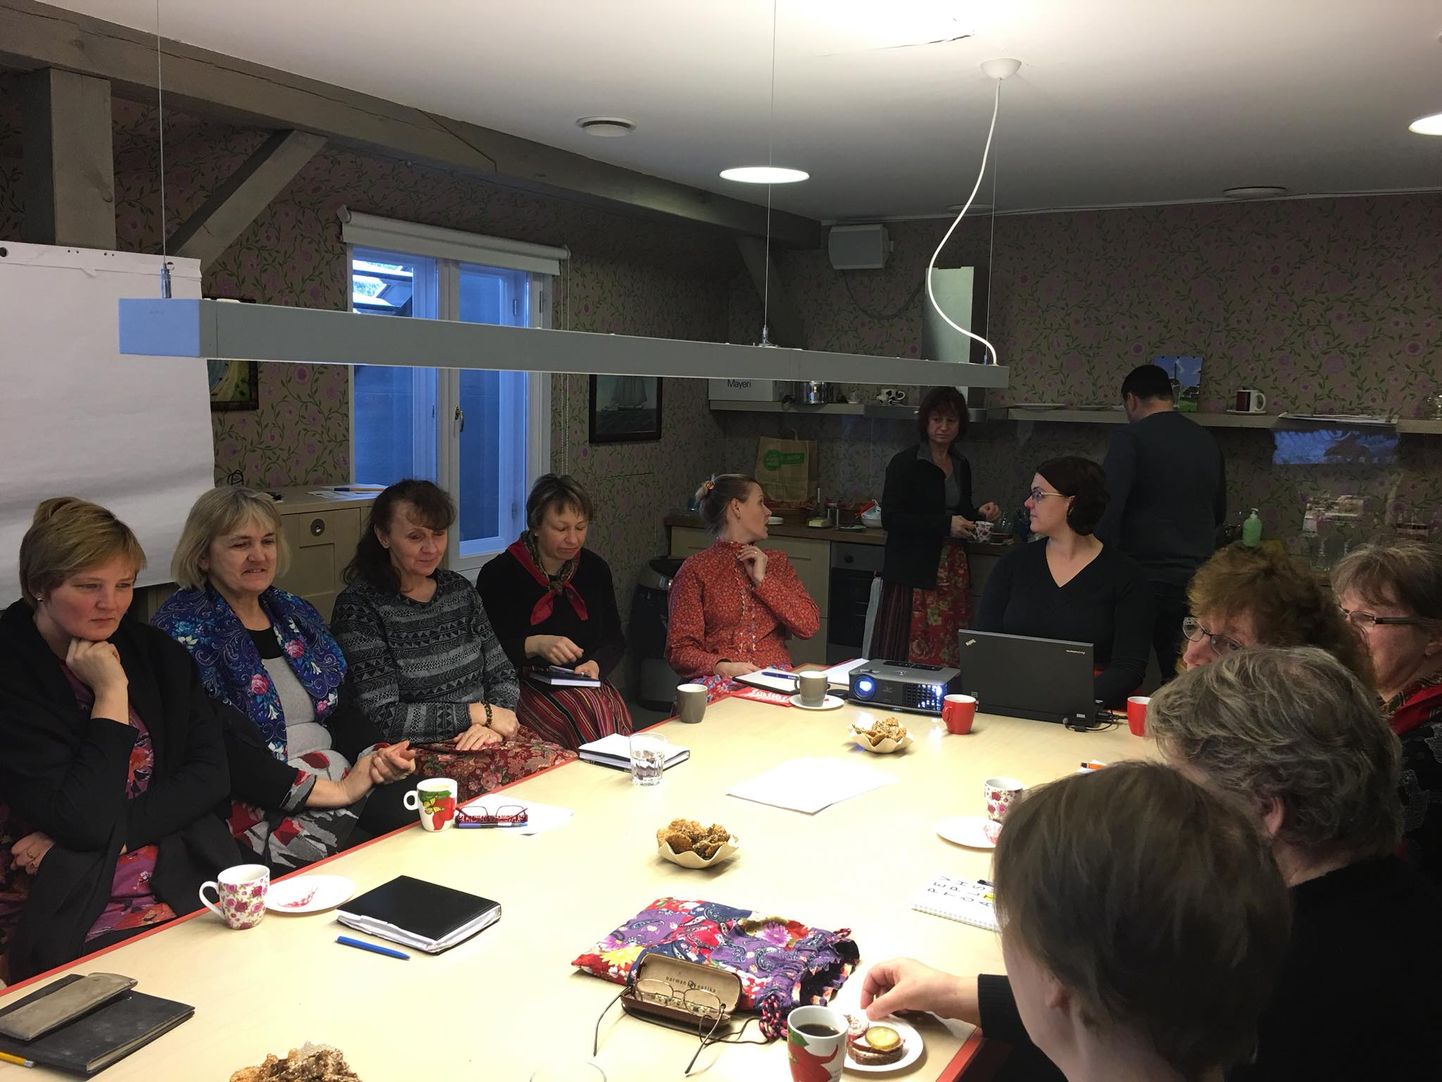 Lihula kohvikutepäeva koordinaator Kristina Kukk jagas Kihnu muuseumis toimunud koolituspäeval kogemusi taolise ürituse korraldamisest.